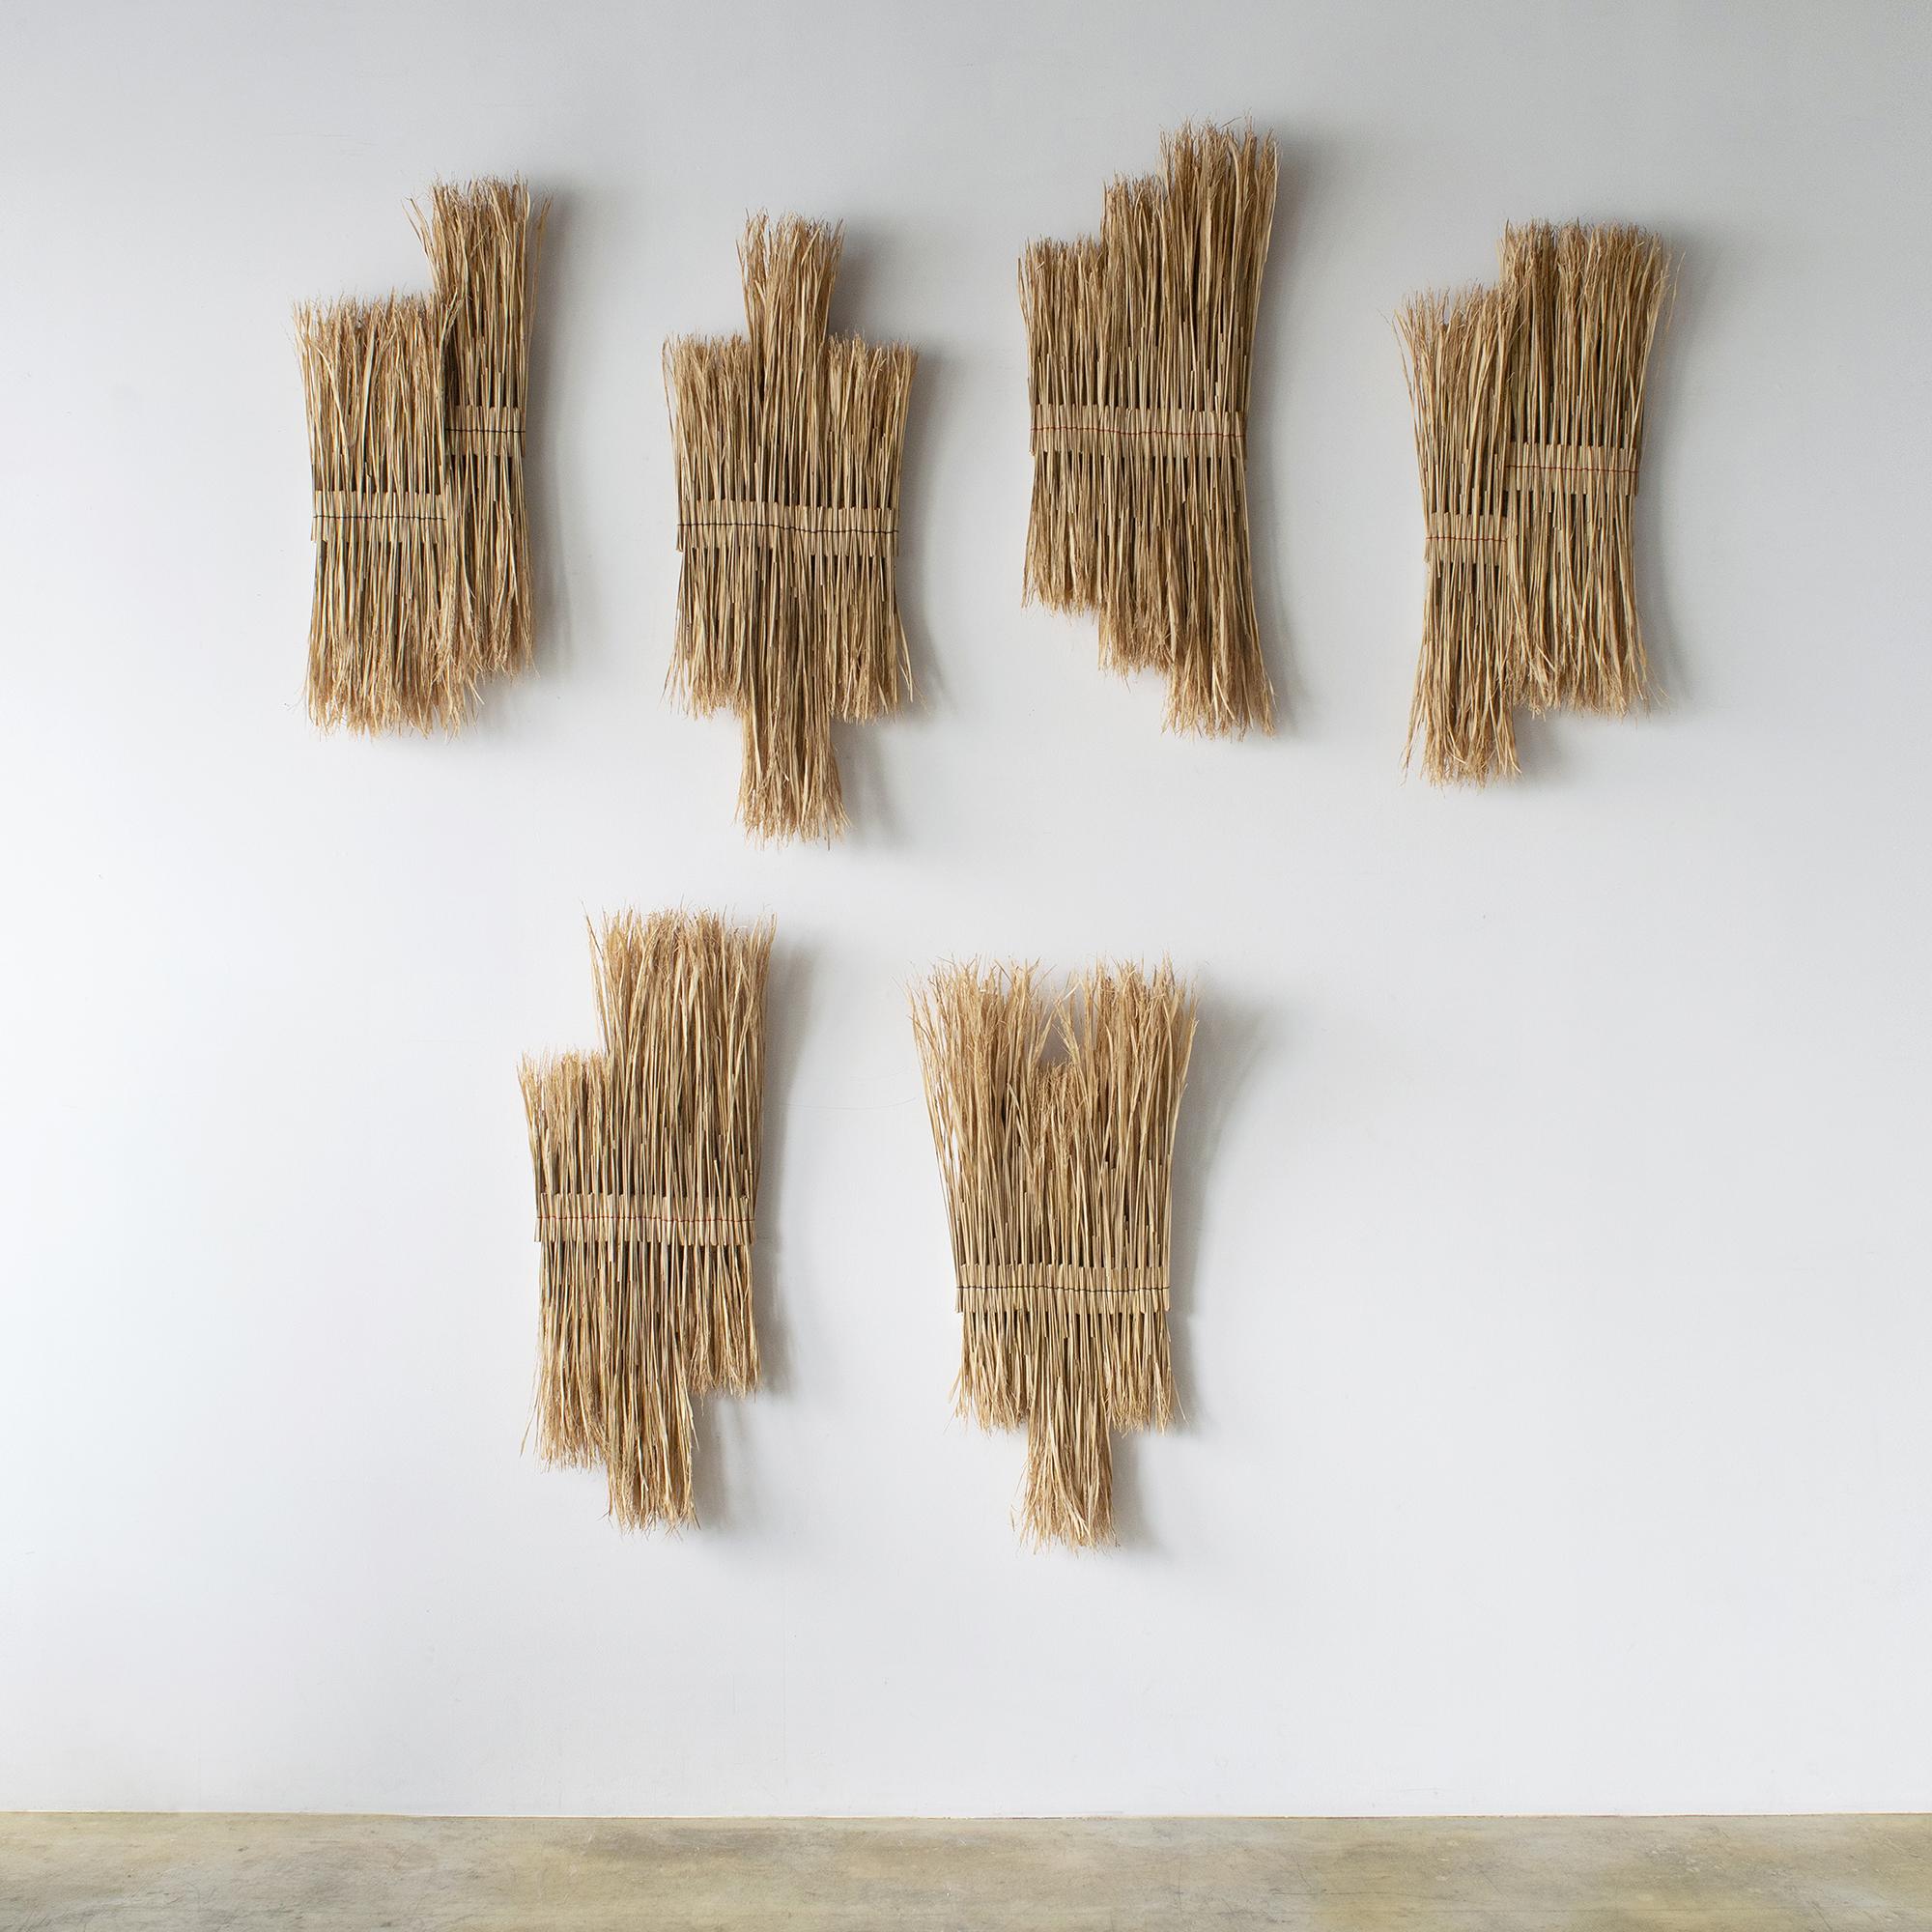 Organic Modern ARKO Wall Art13 Contemporary Art Japanese Craft Rice Straw Art Wall Sculpture For Sale